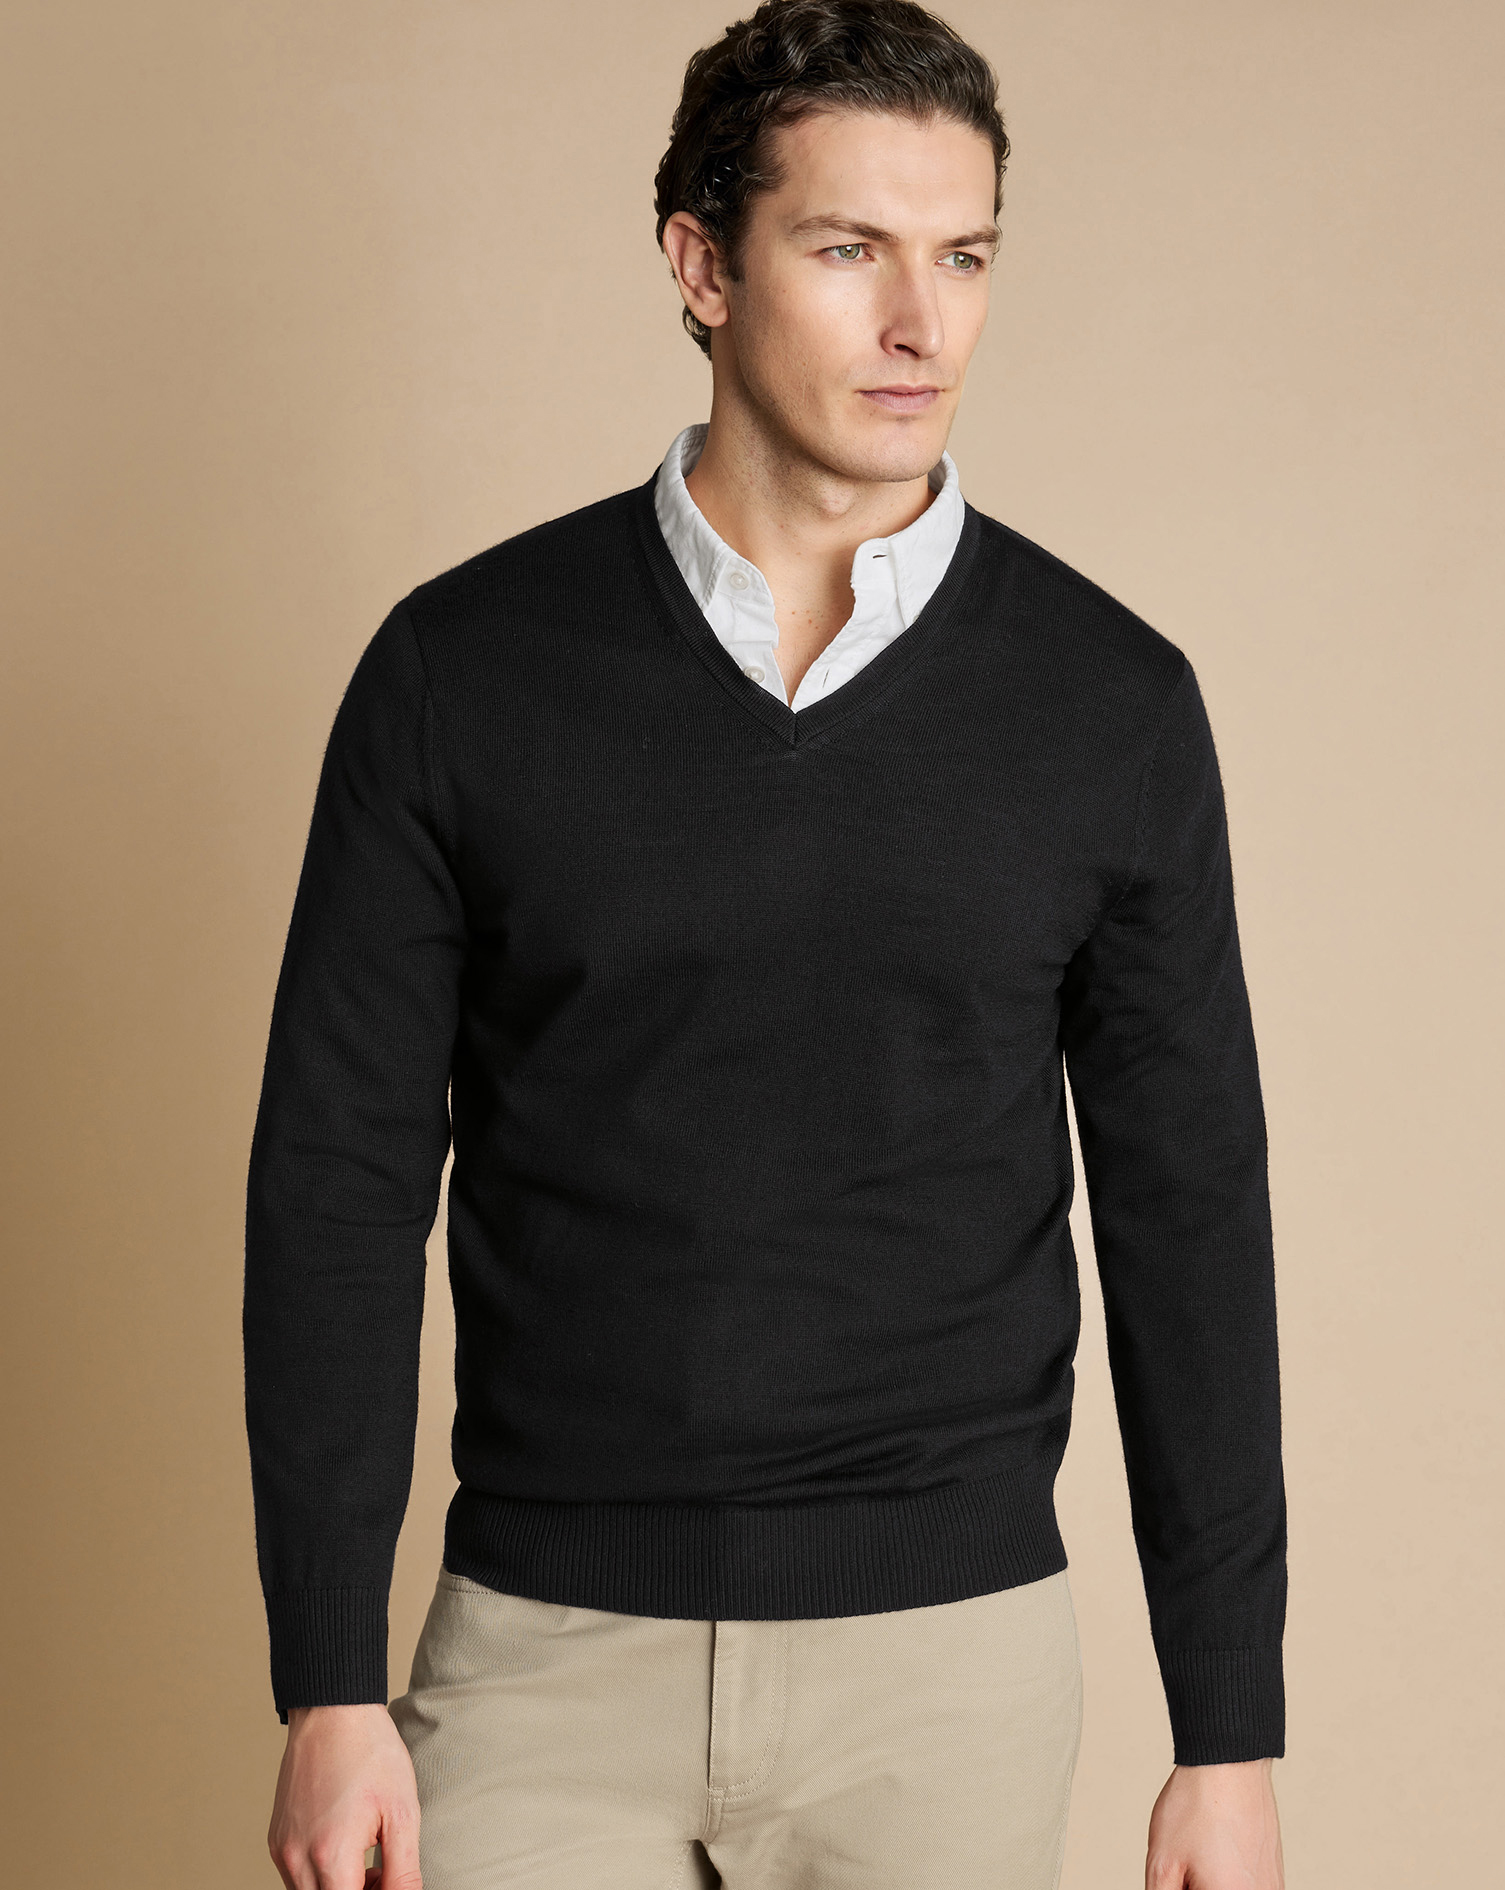 Men's Charles Tyrwhitt V-Neck Sweater - Black Size Large Merino
